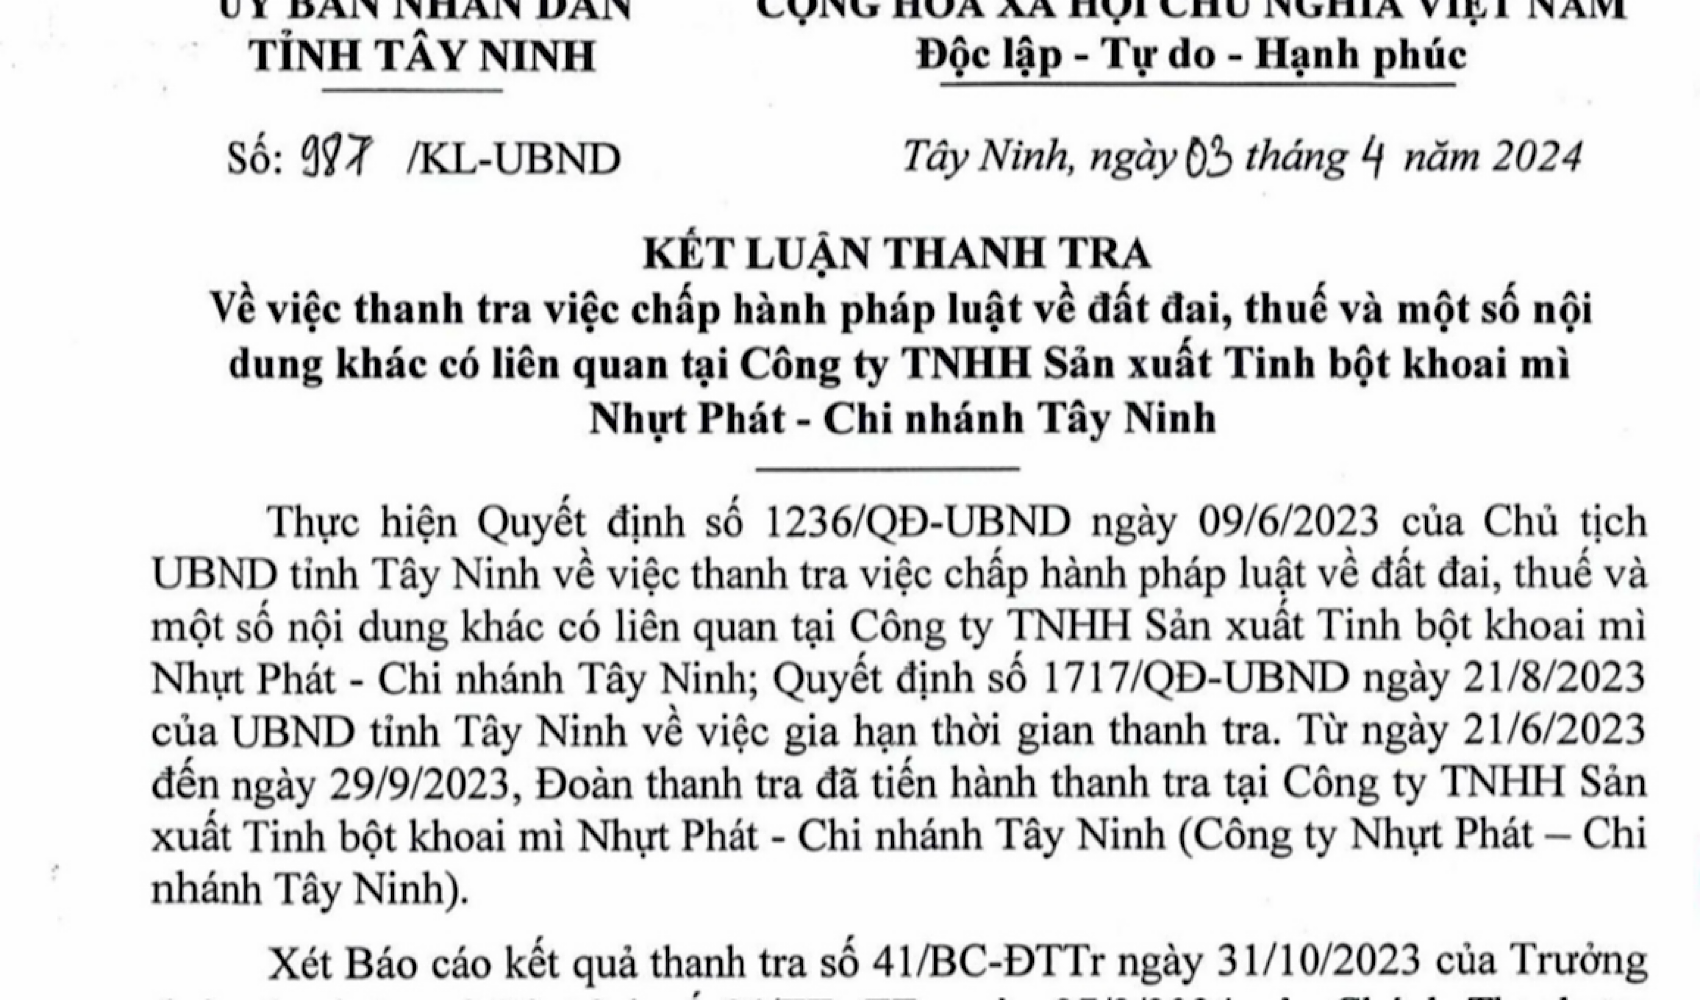 Vi phạm nghiêm trọng của Công ty Nhựt Phát ở Tây Ninh- Ảnh 1.